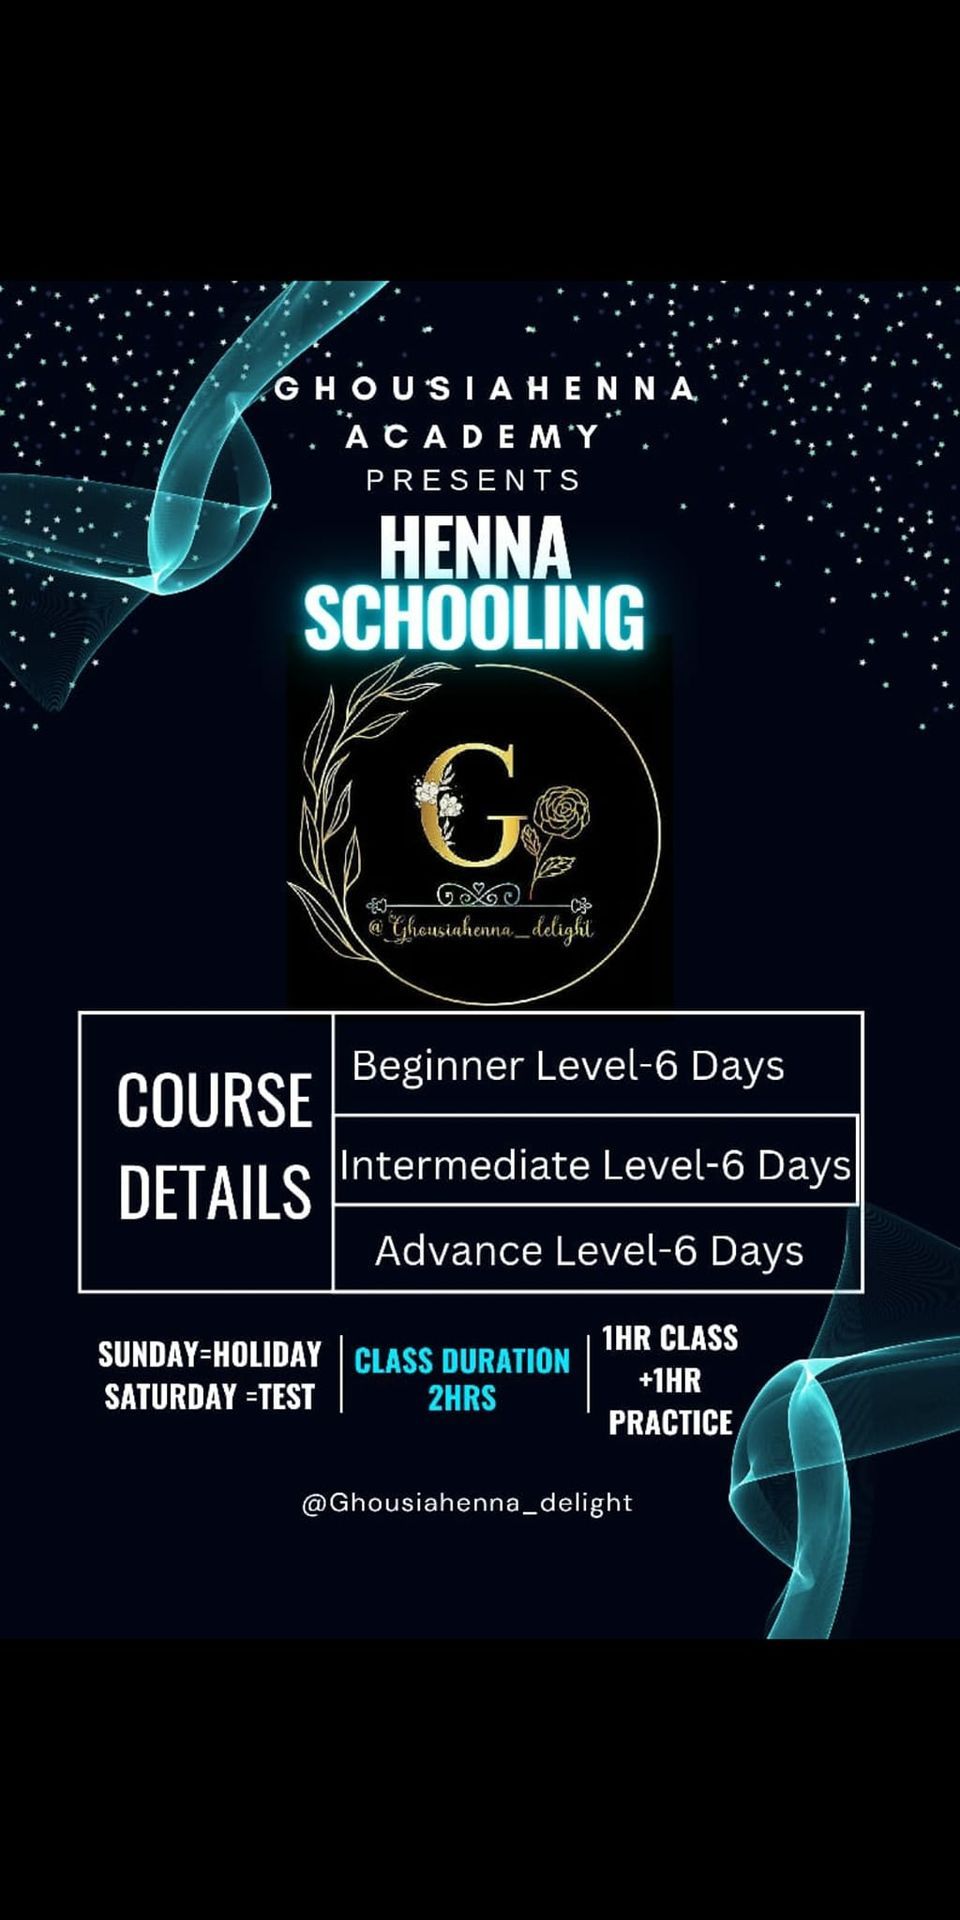 ghousiahenna academy\niseit registered 21days online and offline master class